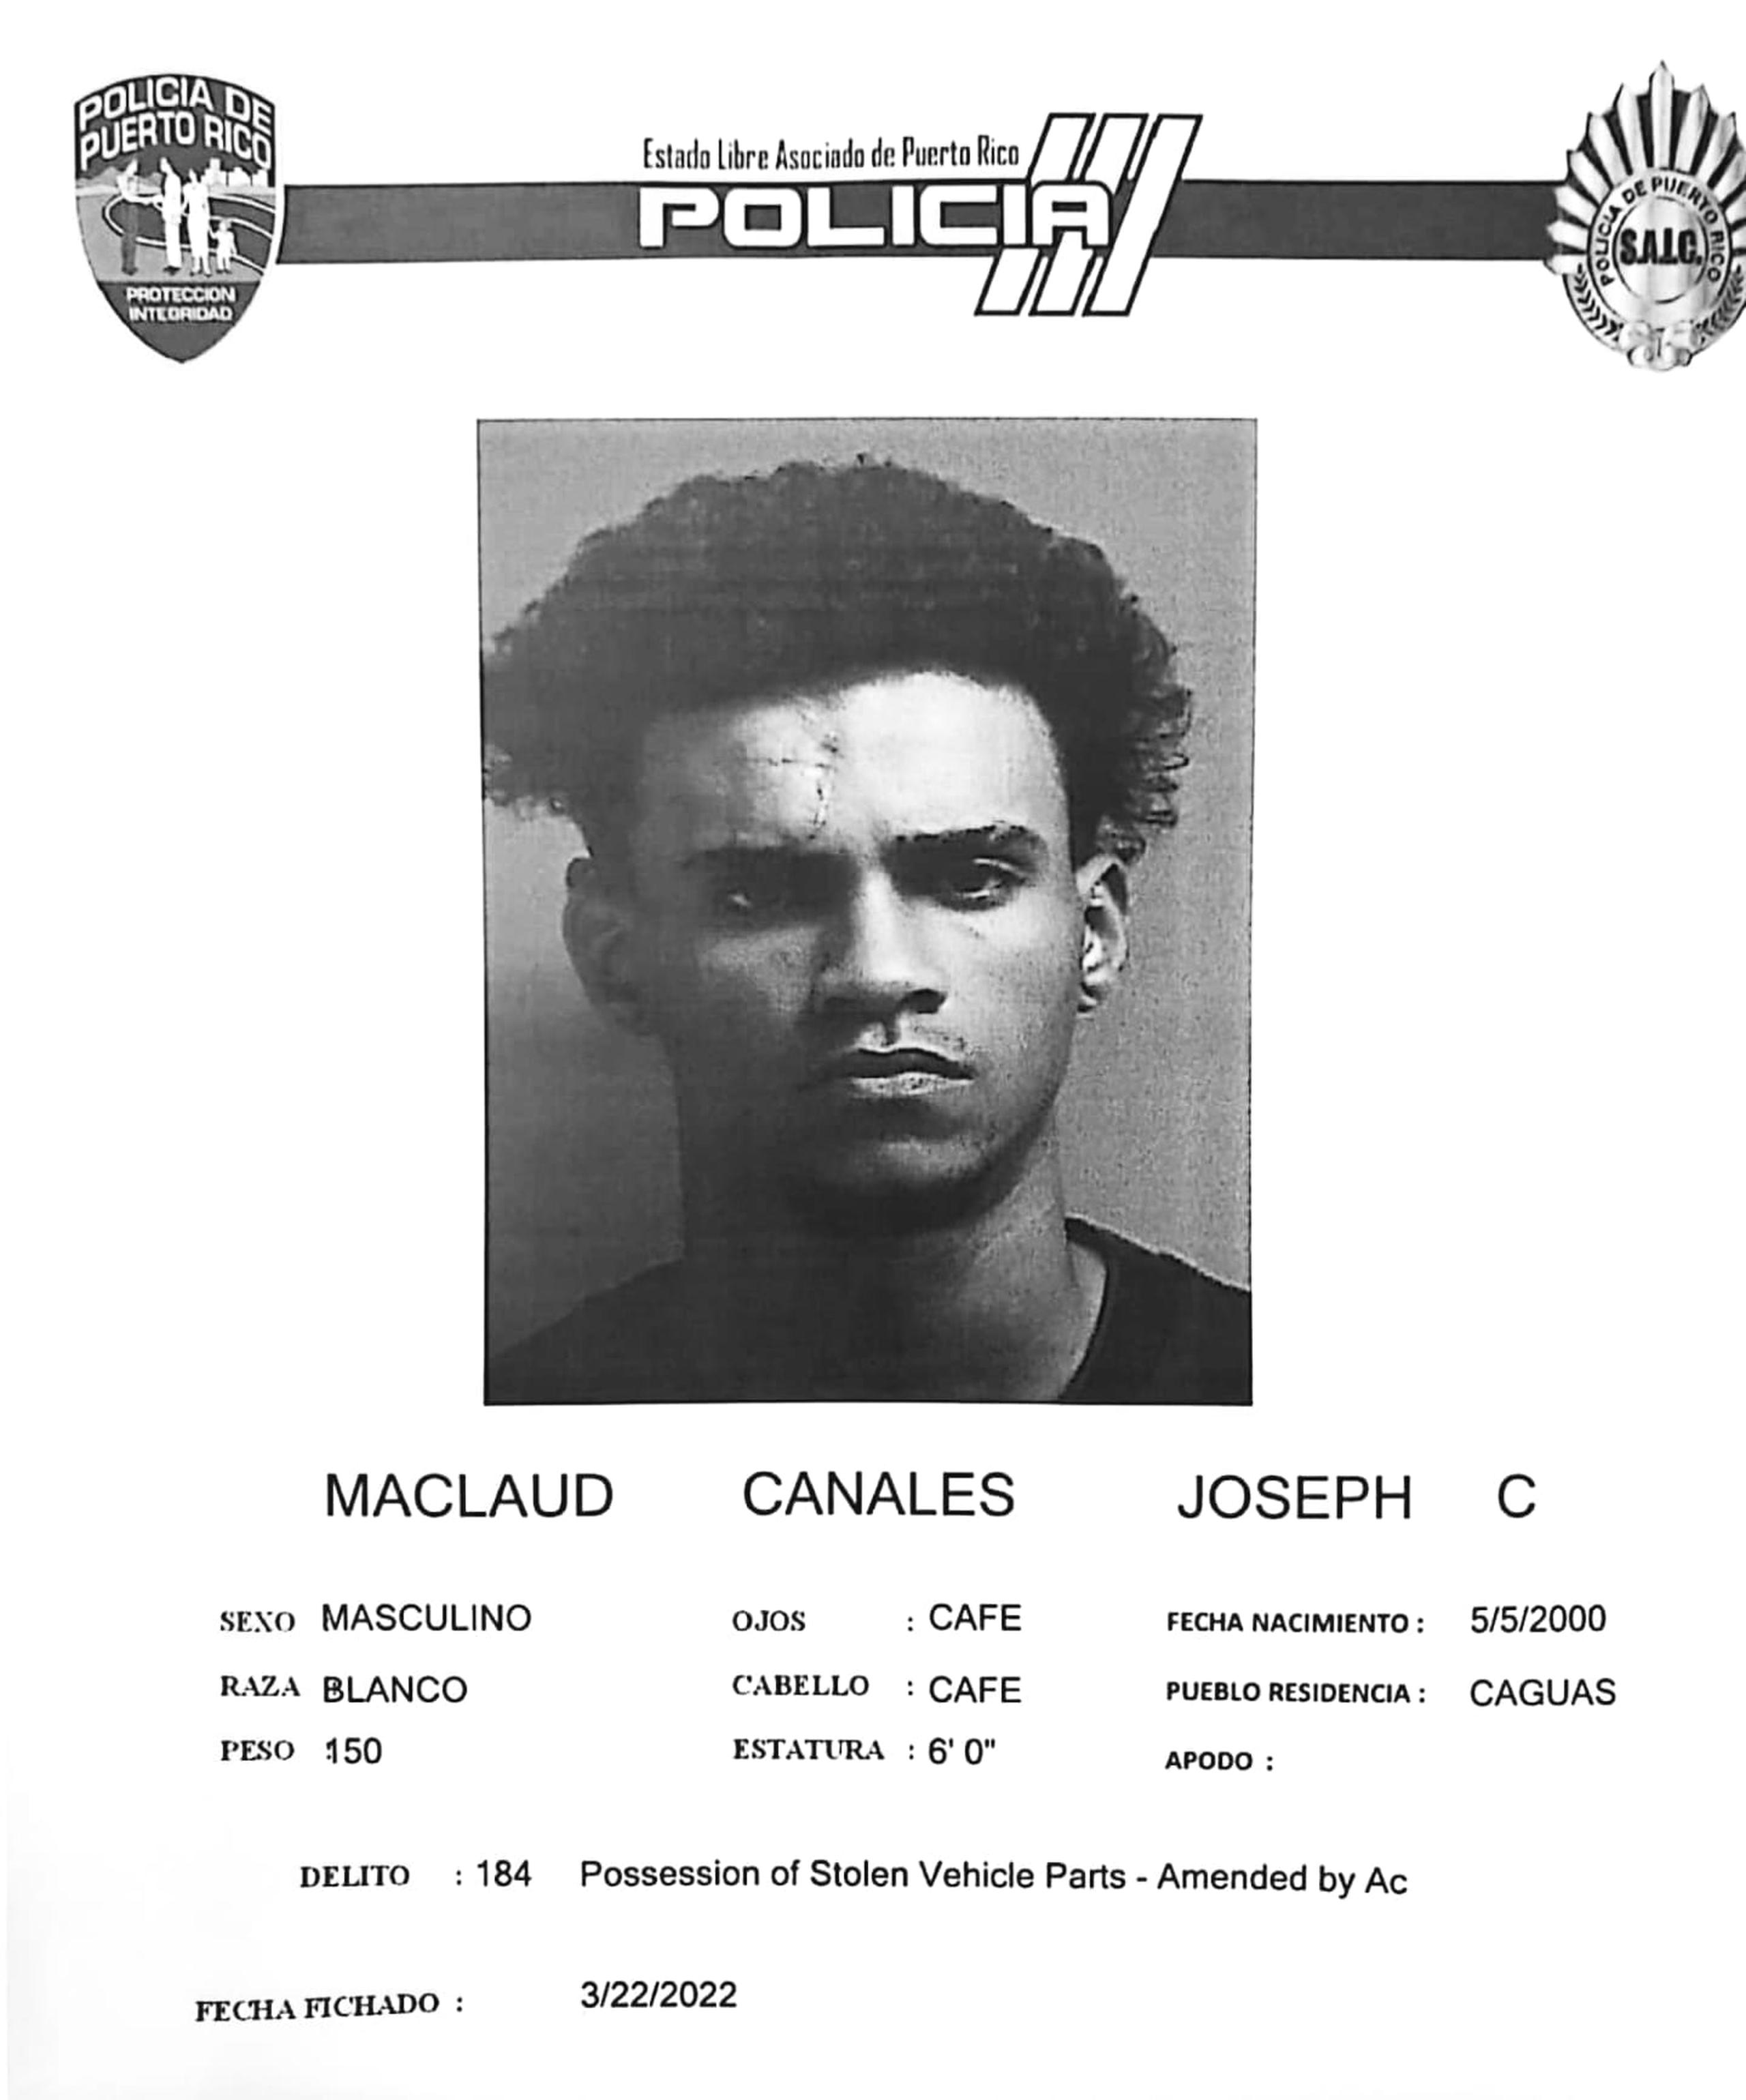 Joseph C. Maclaud Canales fue arrestado junto a otro individuo por la posesión de un vehículo hurtado, entre otros delitos.